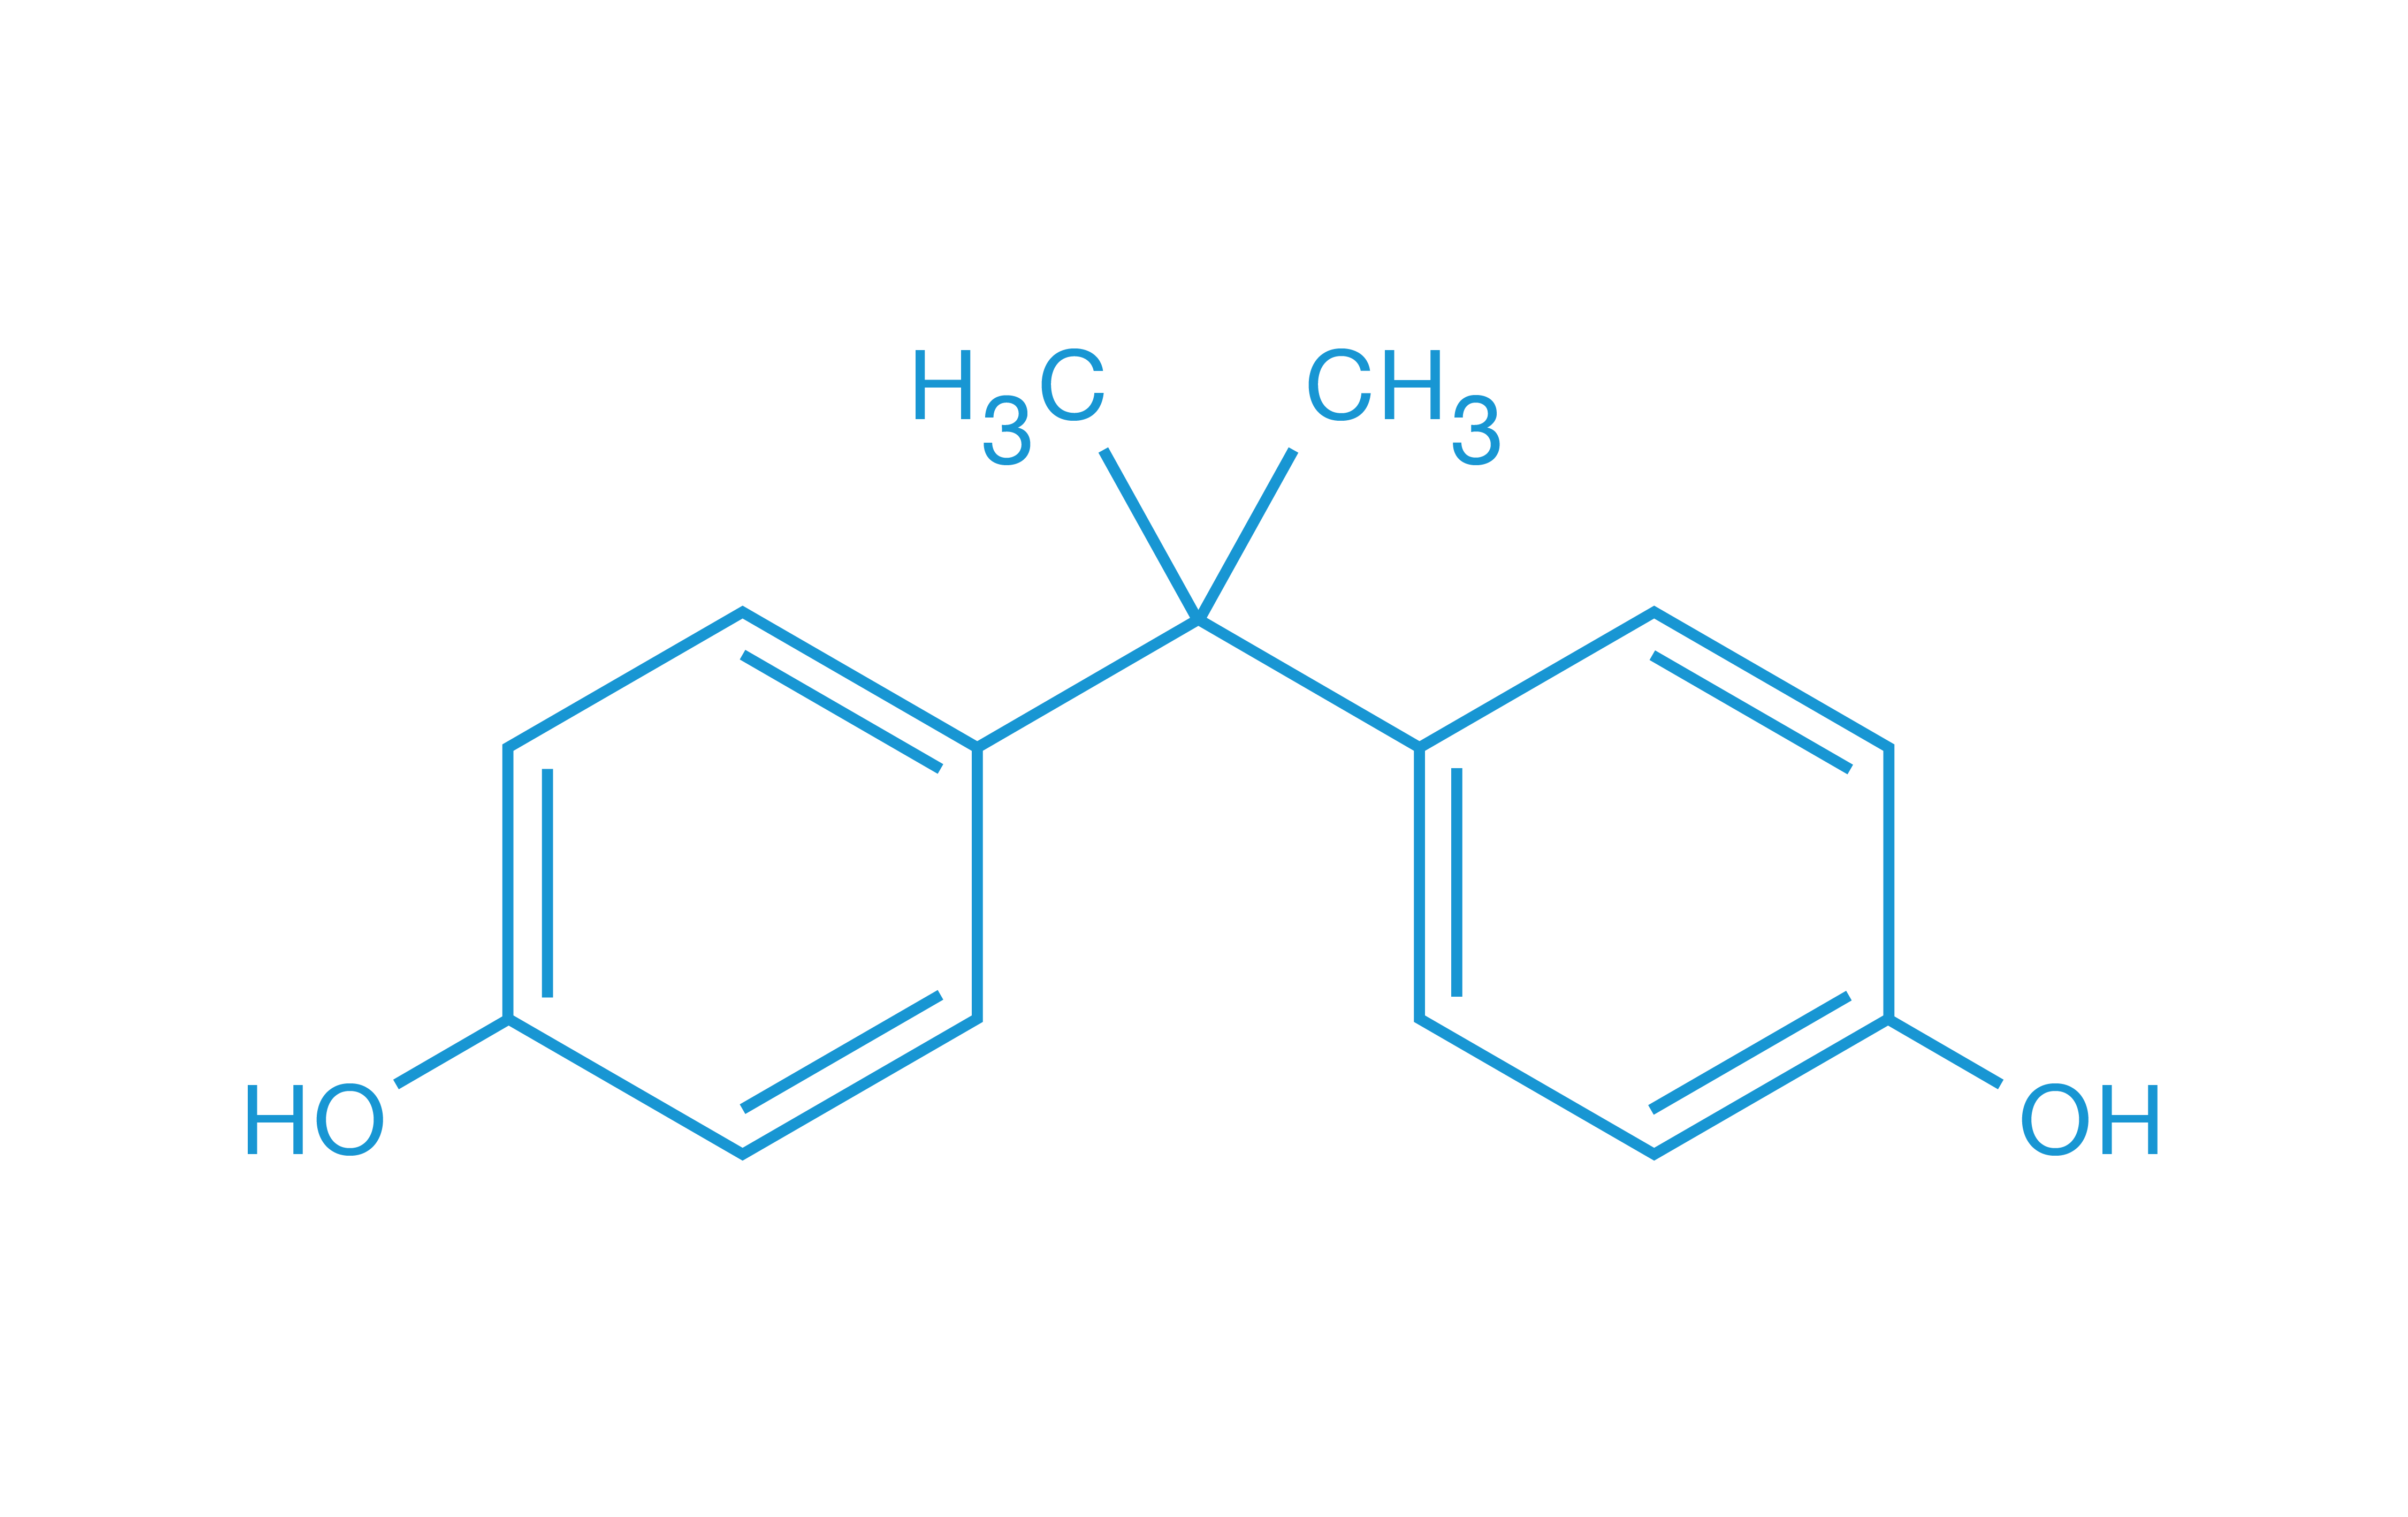 Epoxy stabilizer dimethyl-dihydroxy benzene (C8H10O2)